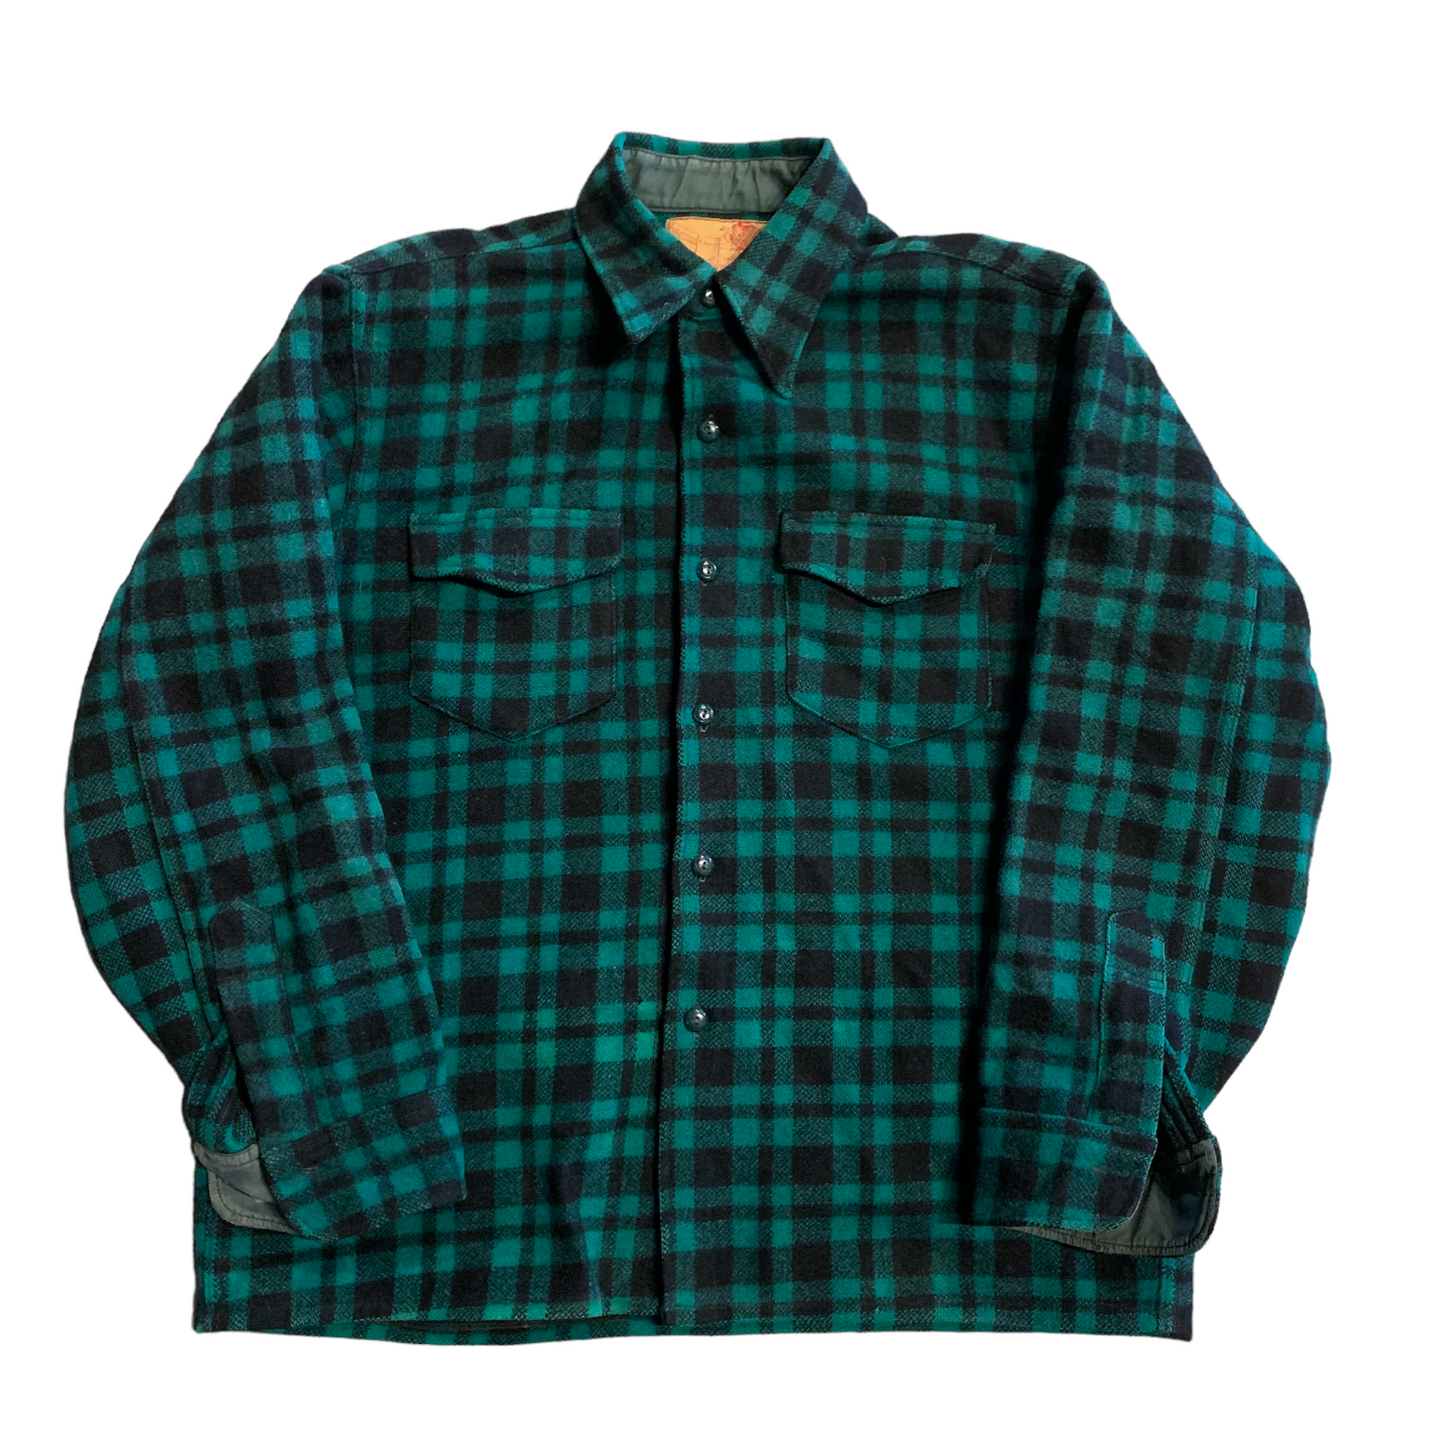 GWG Green/Black Flannel XL